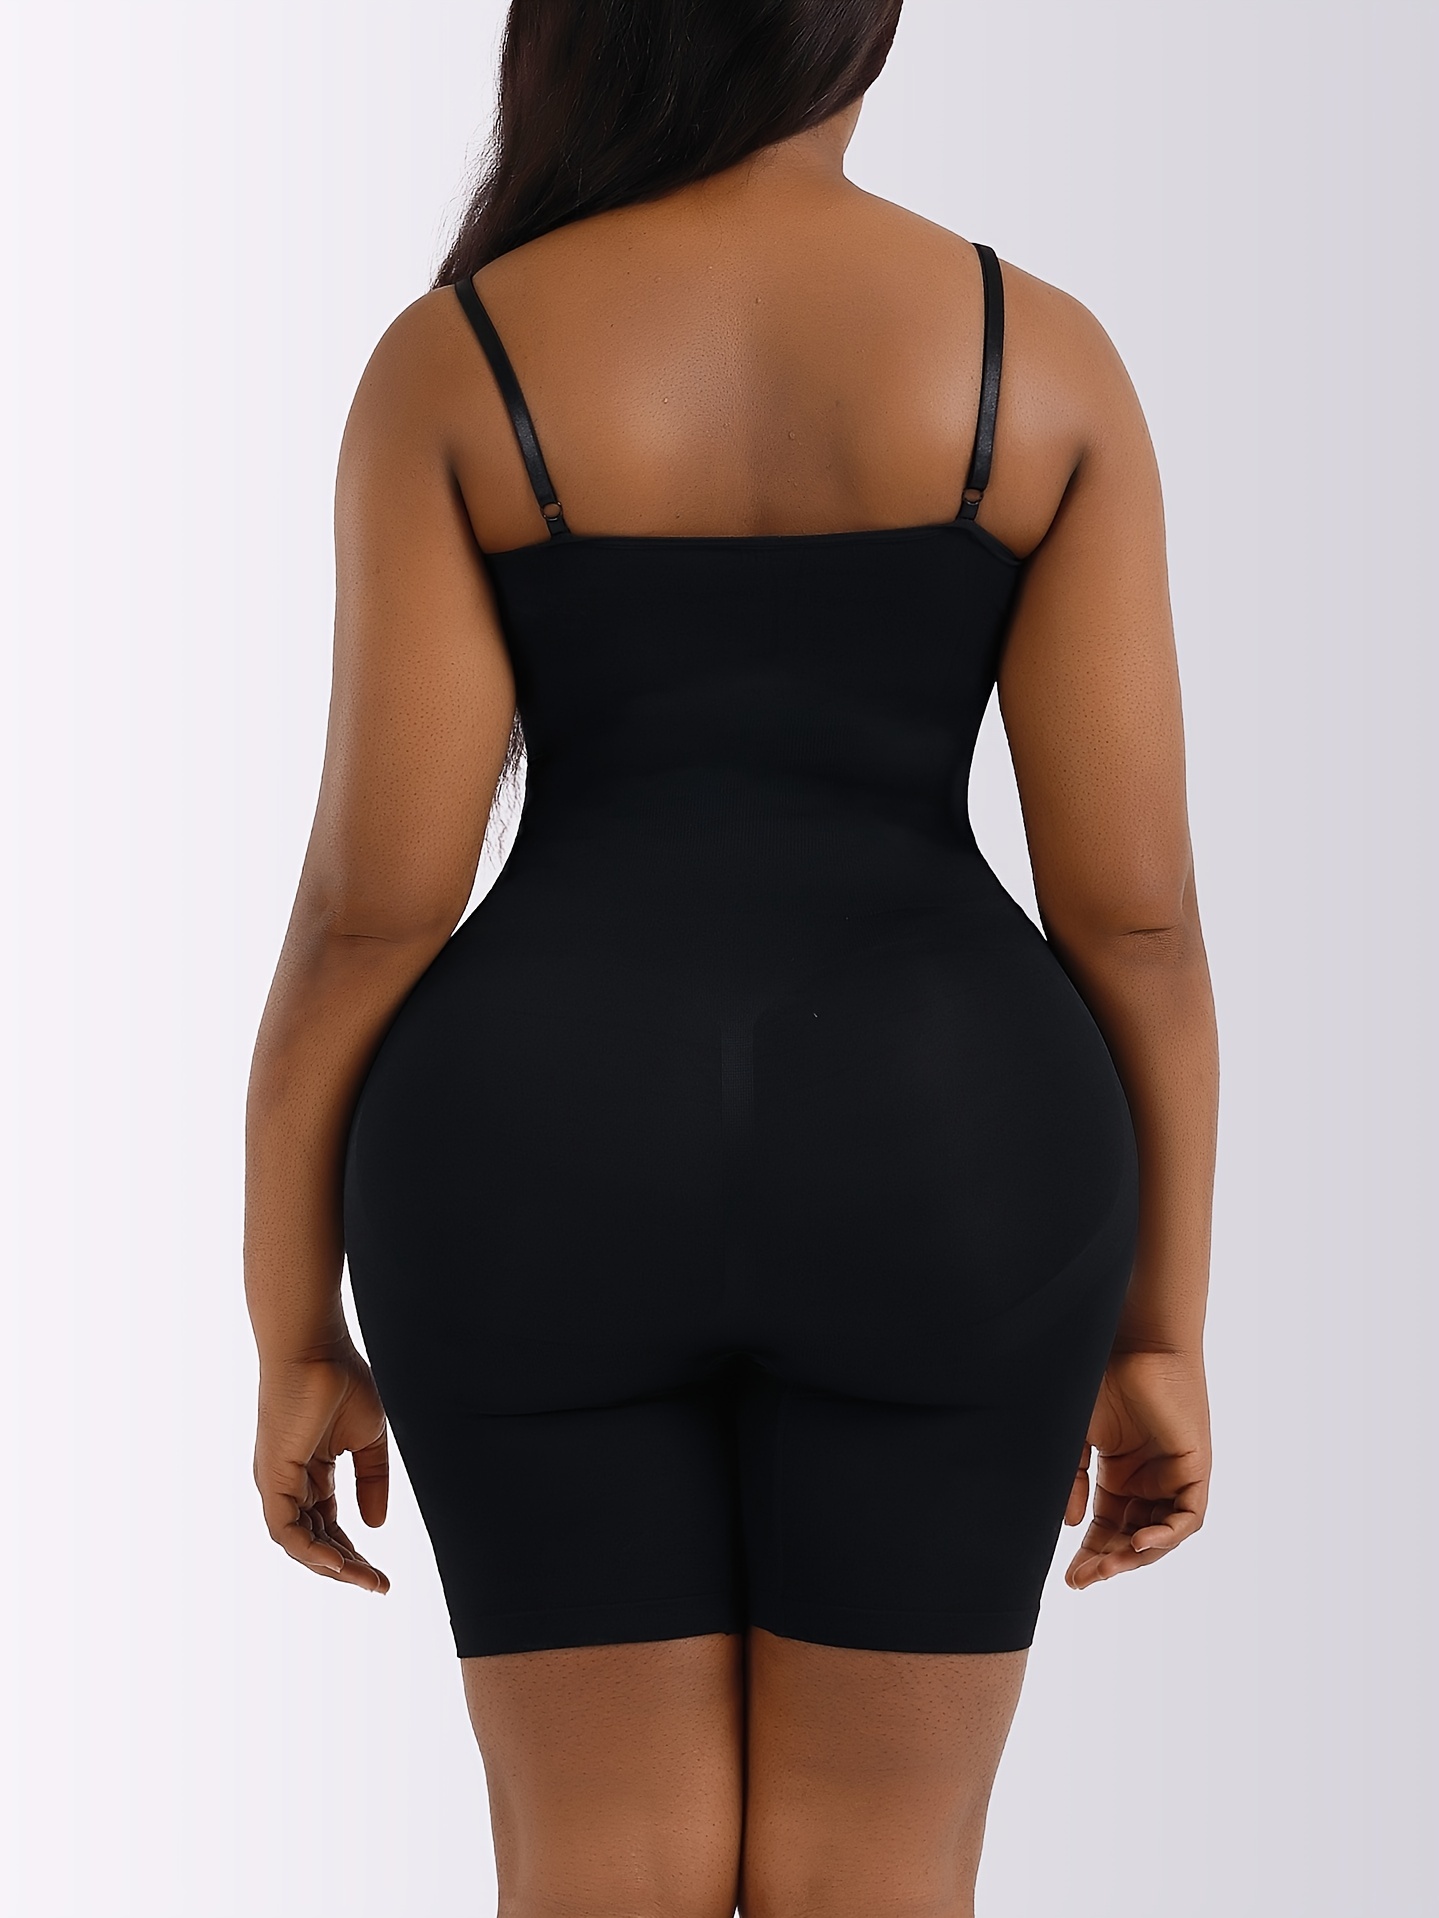 Beonlema Women Shapewear Plus Size Slimming Bodysuit Butt Lifter